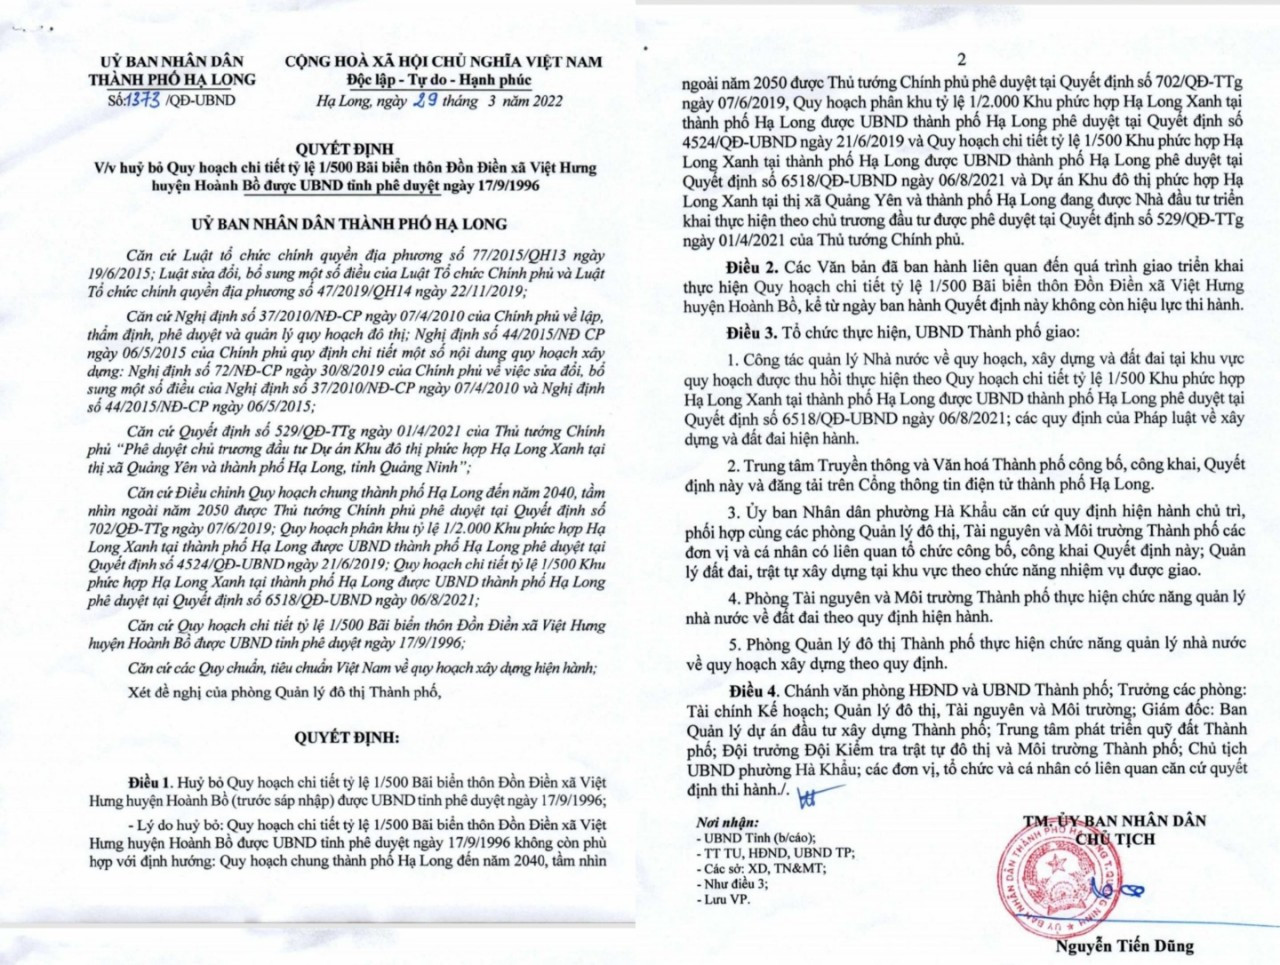 Thành phố Hạ Long ra quyết định huỷ bỏ dự án do UBND tỉnh Quảng Ninh phê duyệt, Quyết định này được ra sau khi có Quyết định cưỡng chế thu hồi gần 5 tháng